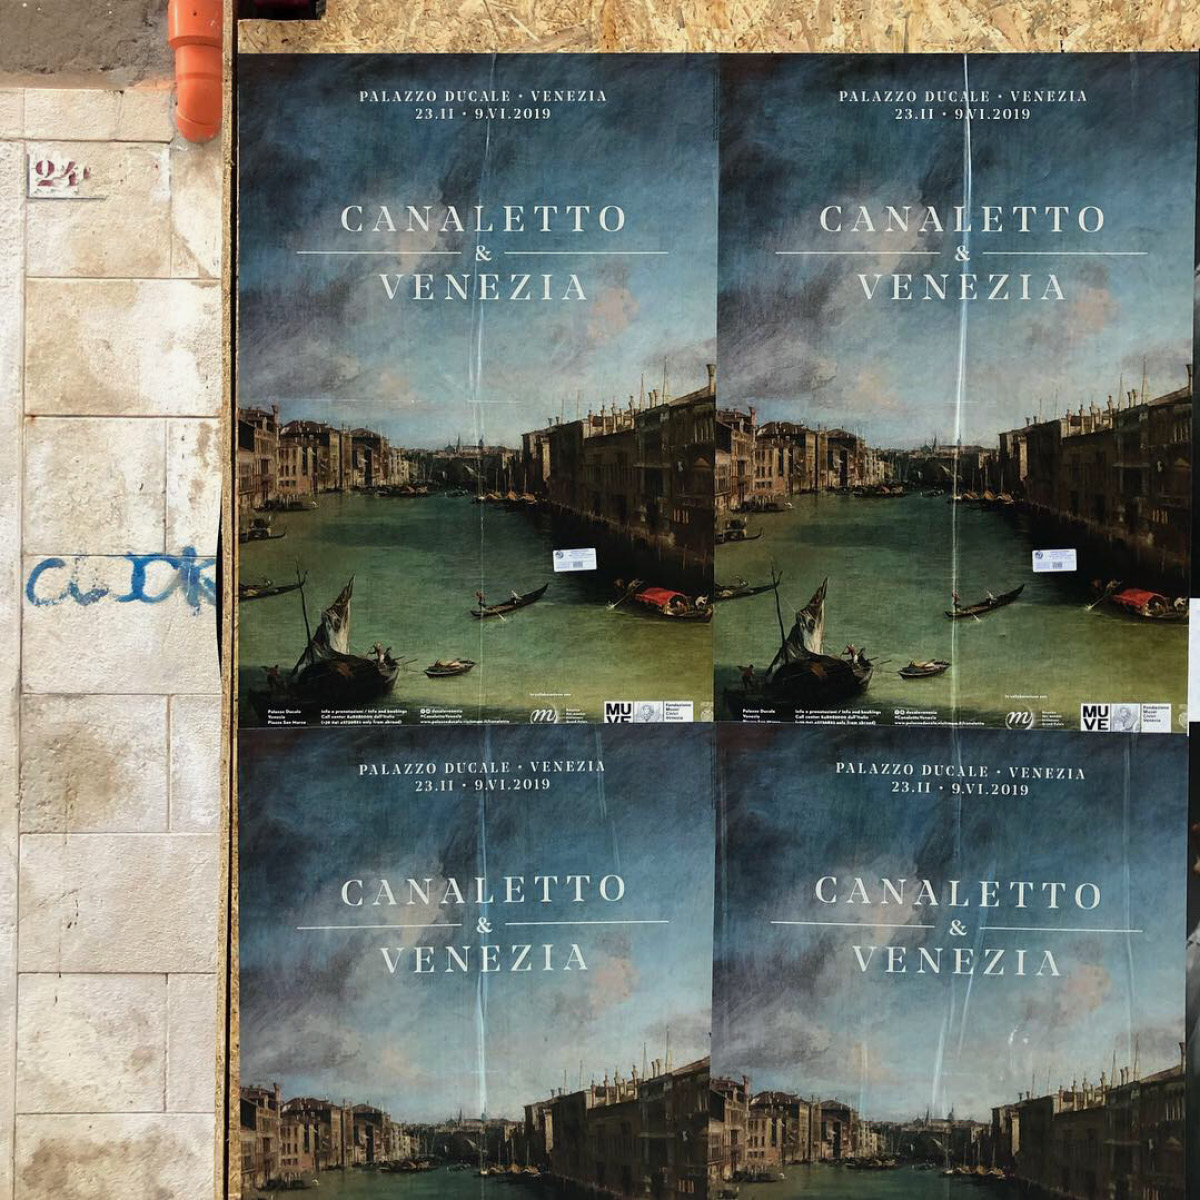 Canaletto-Venezia-002 